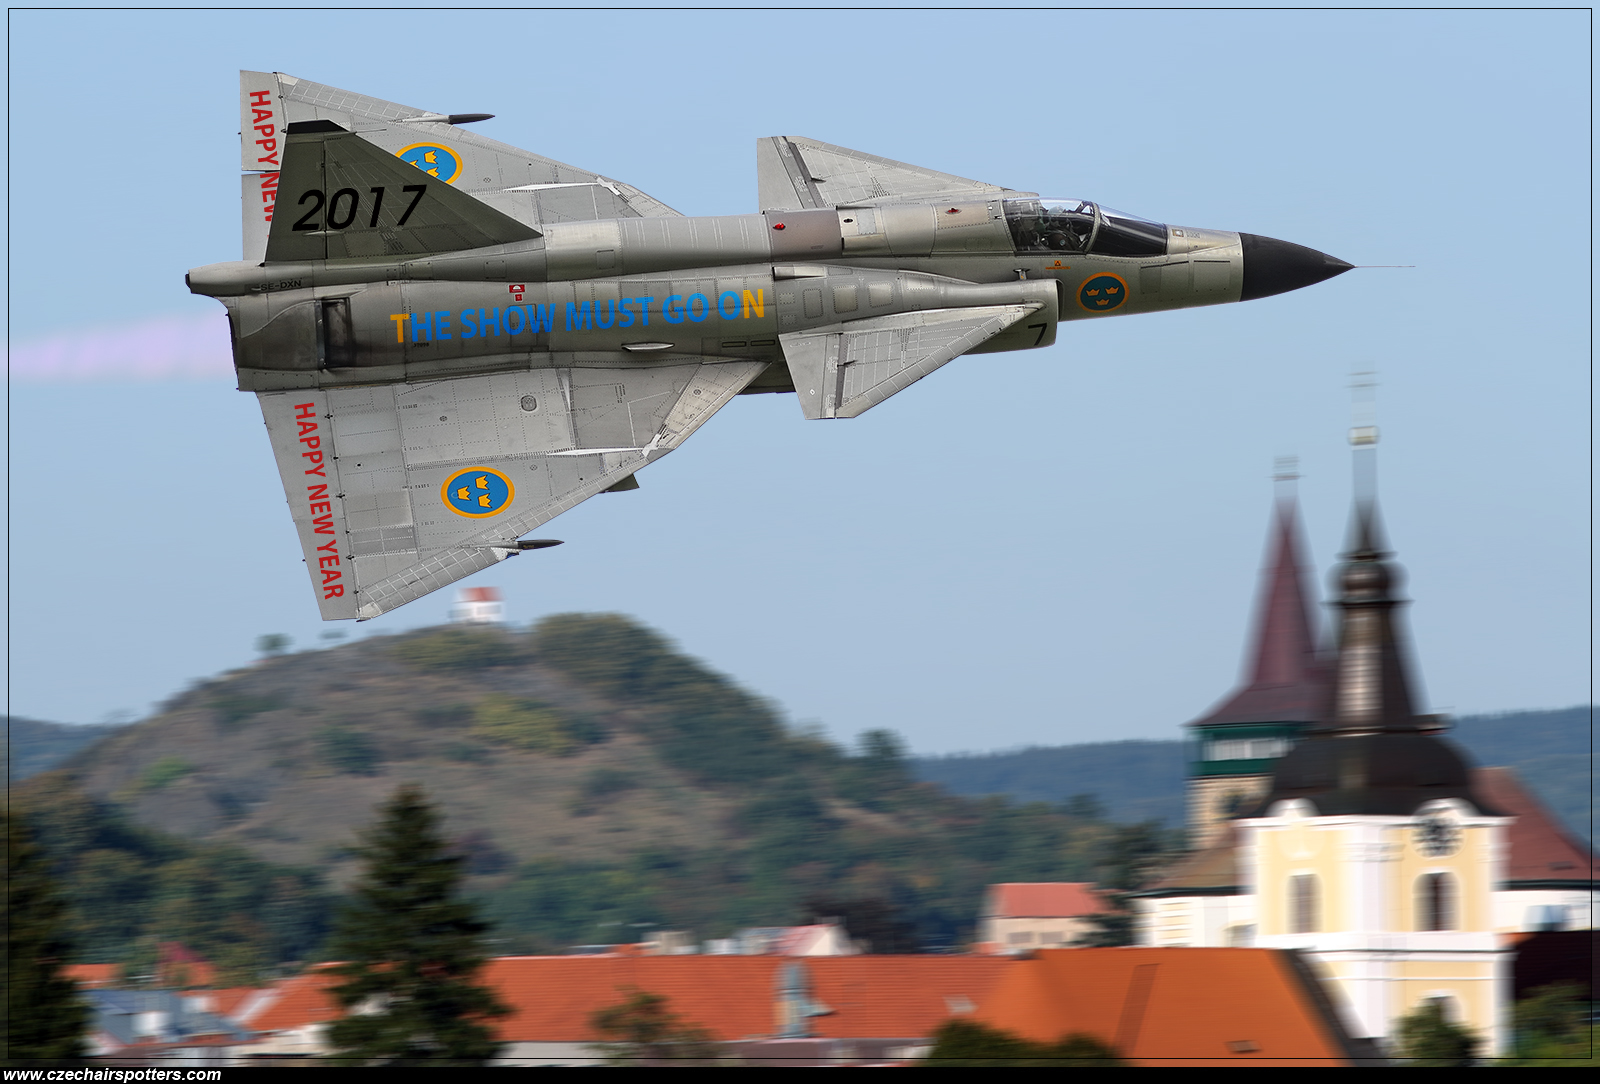 Sweden - Air Force – Saab AJS37 Viggen SE-DXN/52